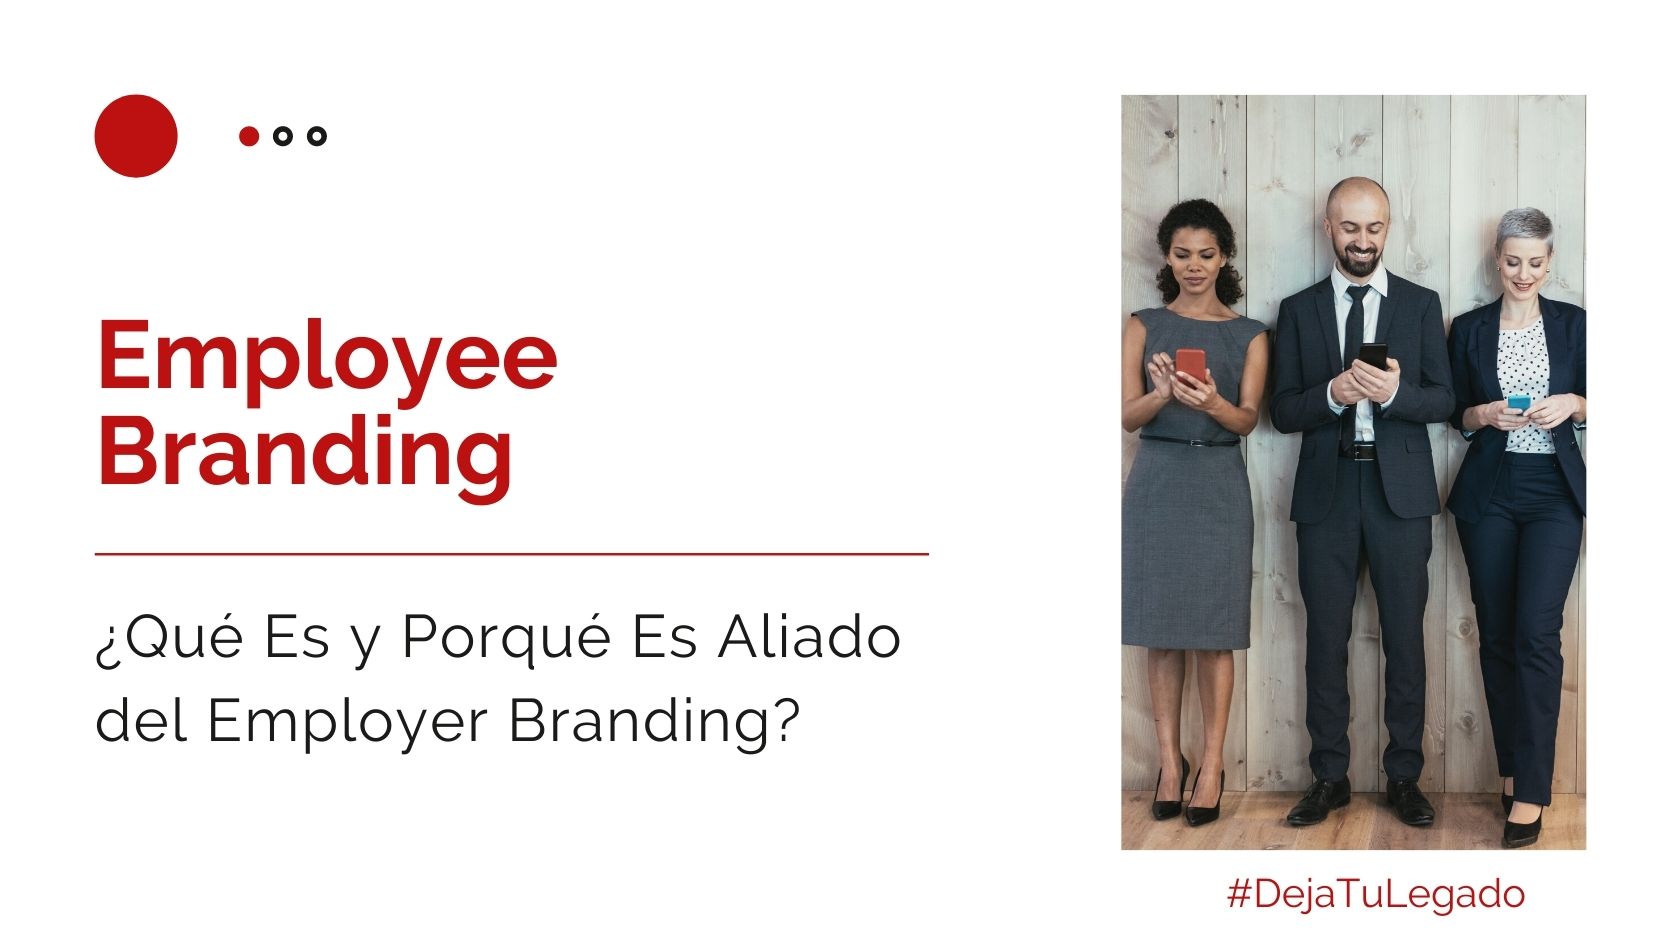 Héctor-Jimenez-Employee-Branding-Qué-Es-y-Porqué-Es-Aliado-del-Employer-Branding-1